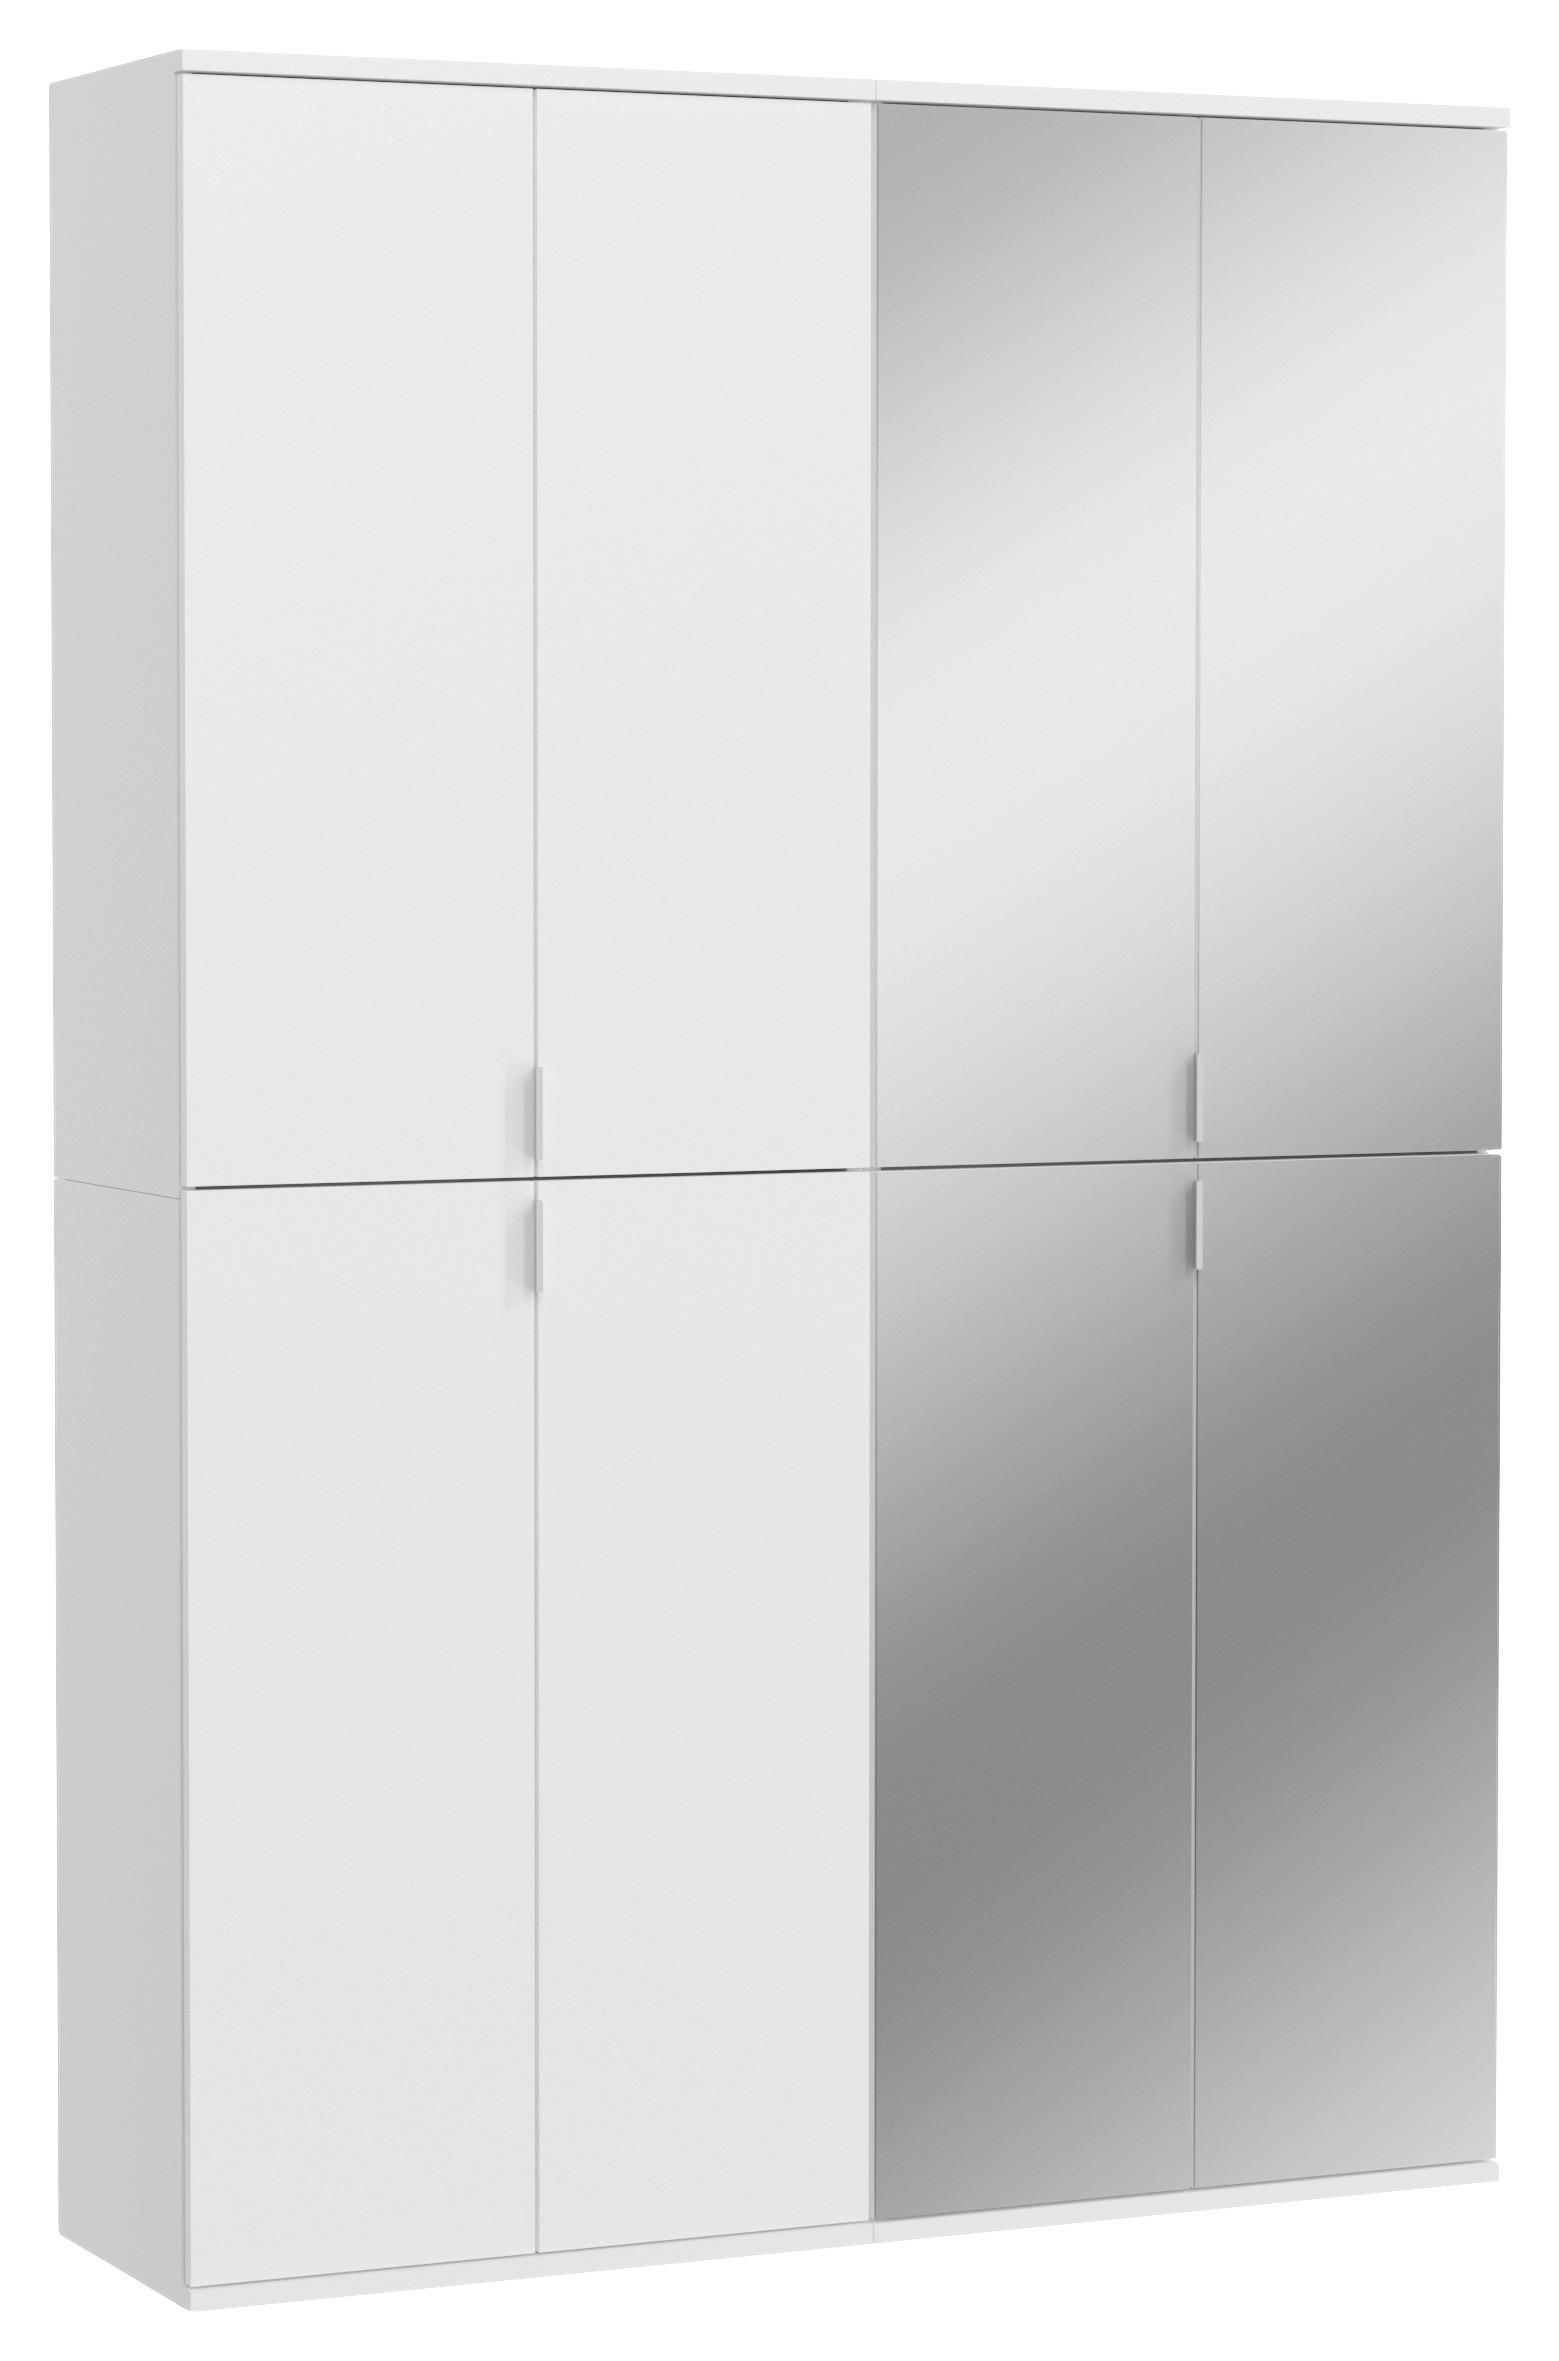 DREHTÜRENSCHRANK 8-türig Weiß  - Chromfarben/Weiß Hochglanz, MODERN, Holzwerkstoff/Metall (122/193/34cm) - MID.YOU